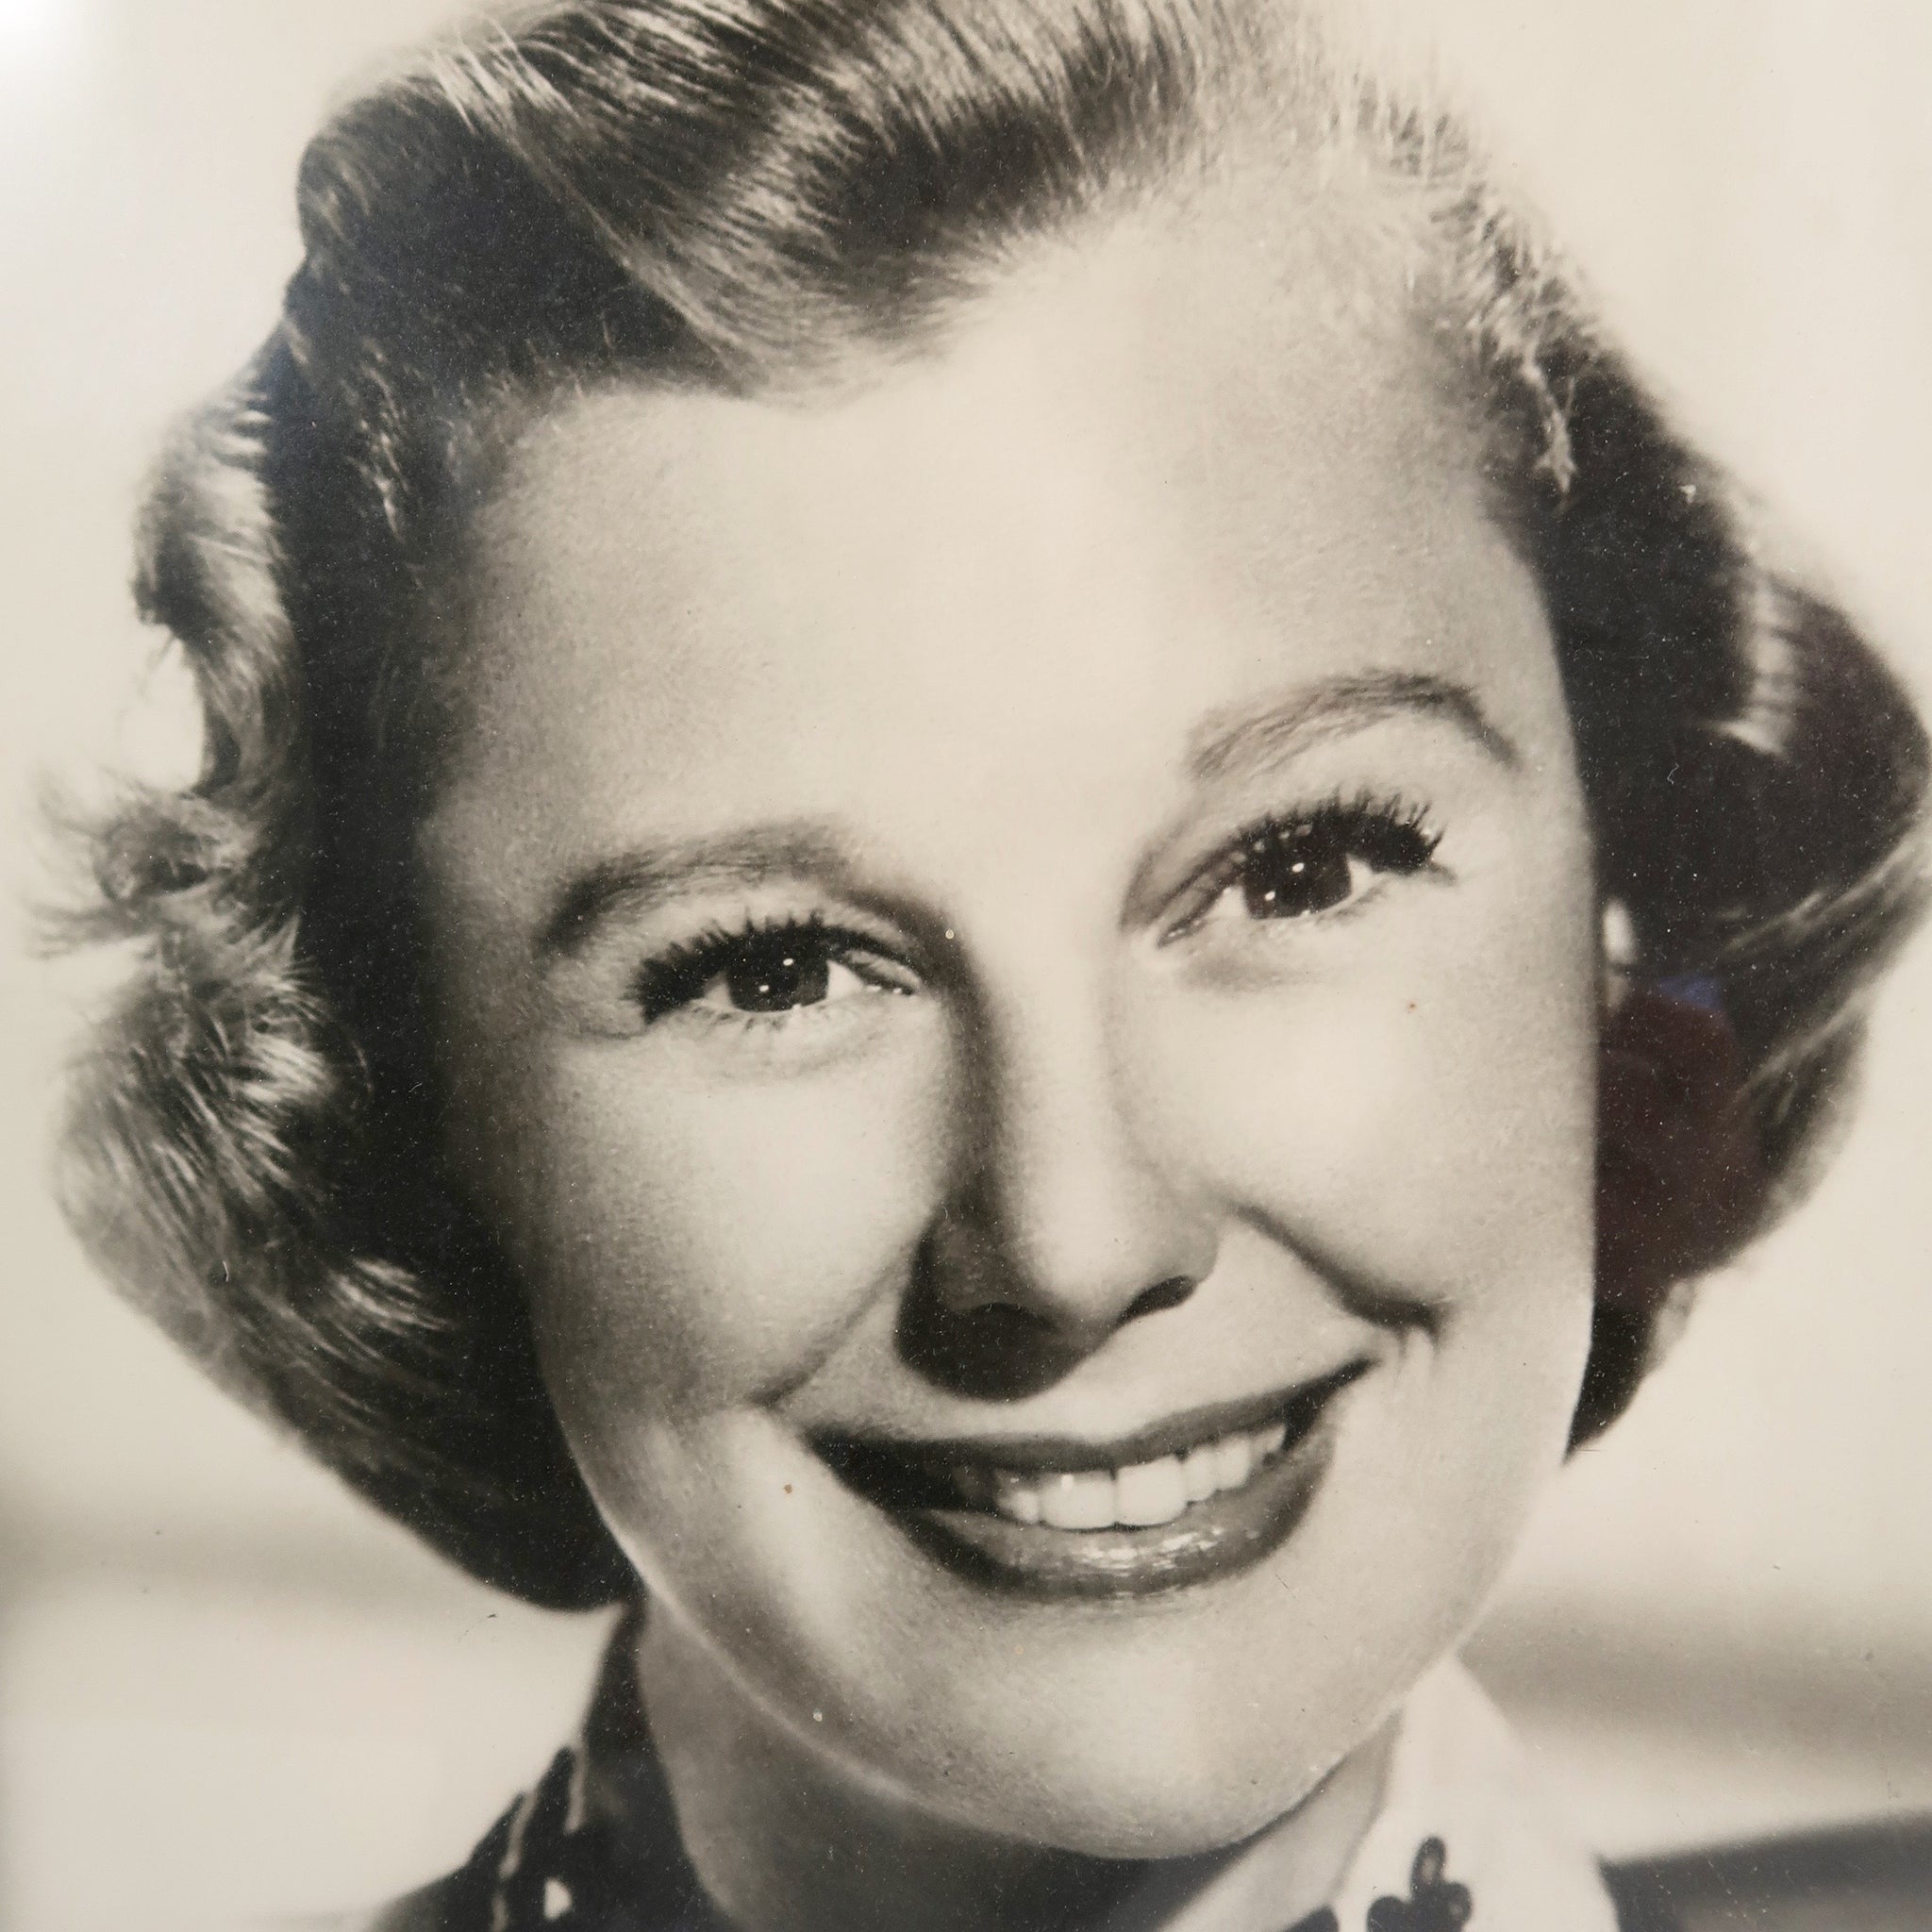 Original framed photo image of June Allyson  circa 1950.